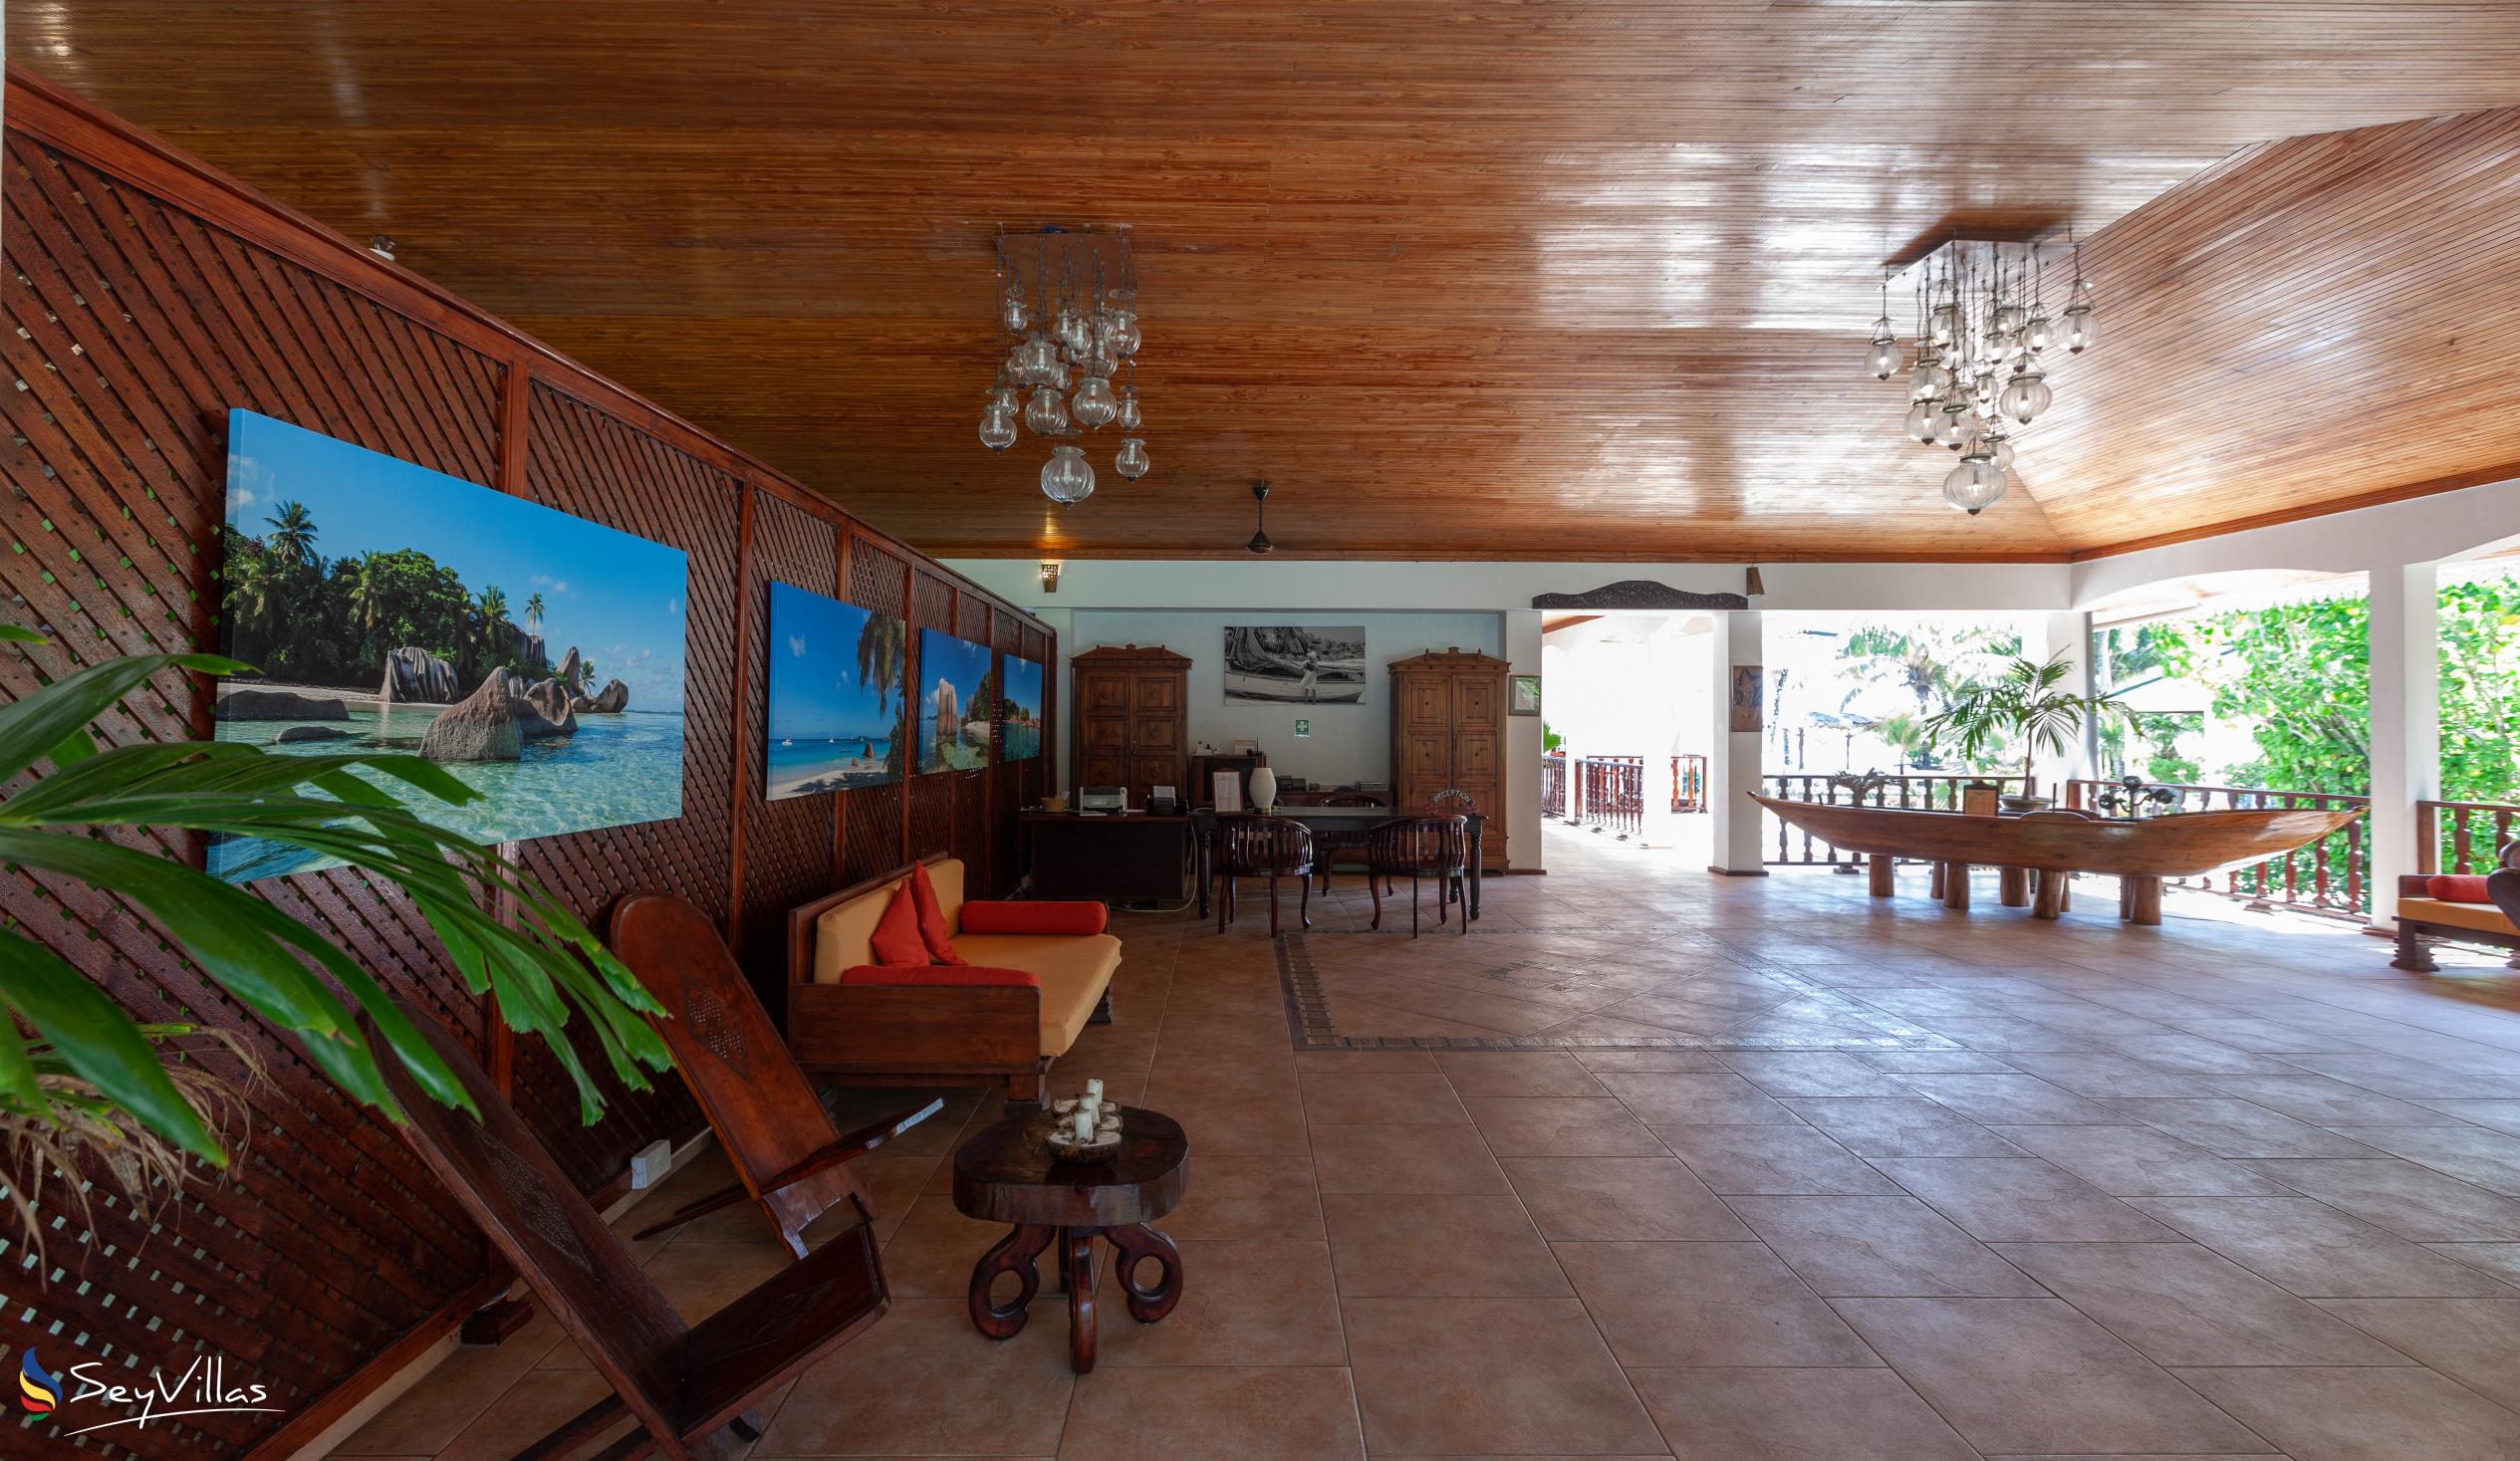 Foto 20: Hotel Cote D'Or Lodge - Intérieur - Praslin (Seychelles)